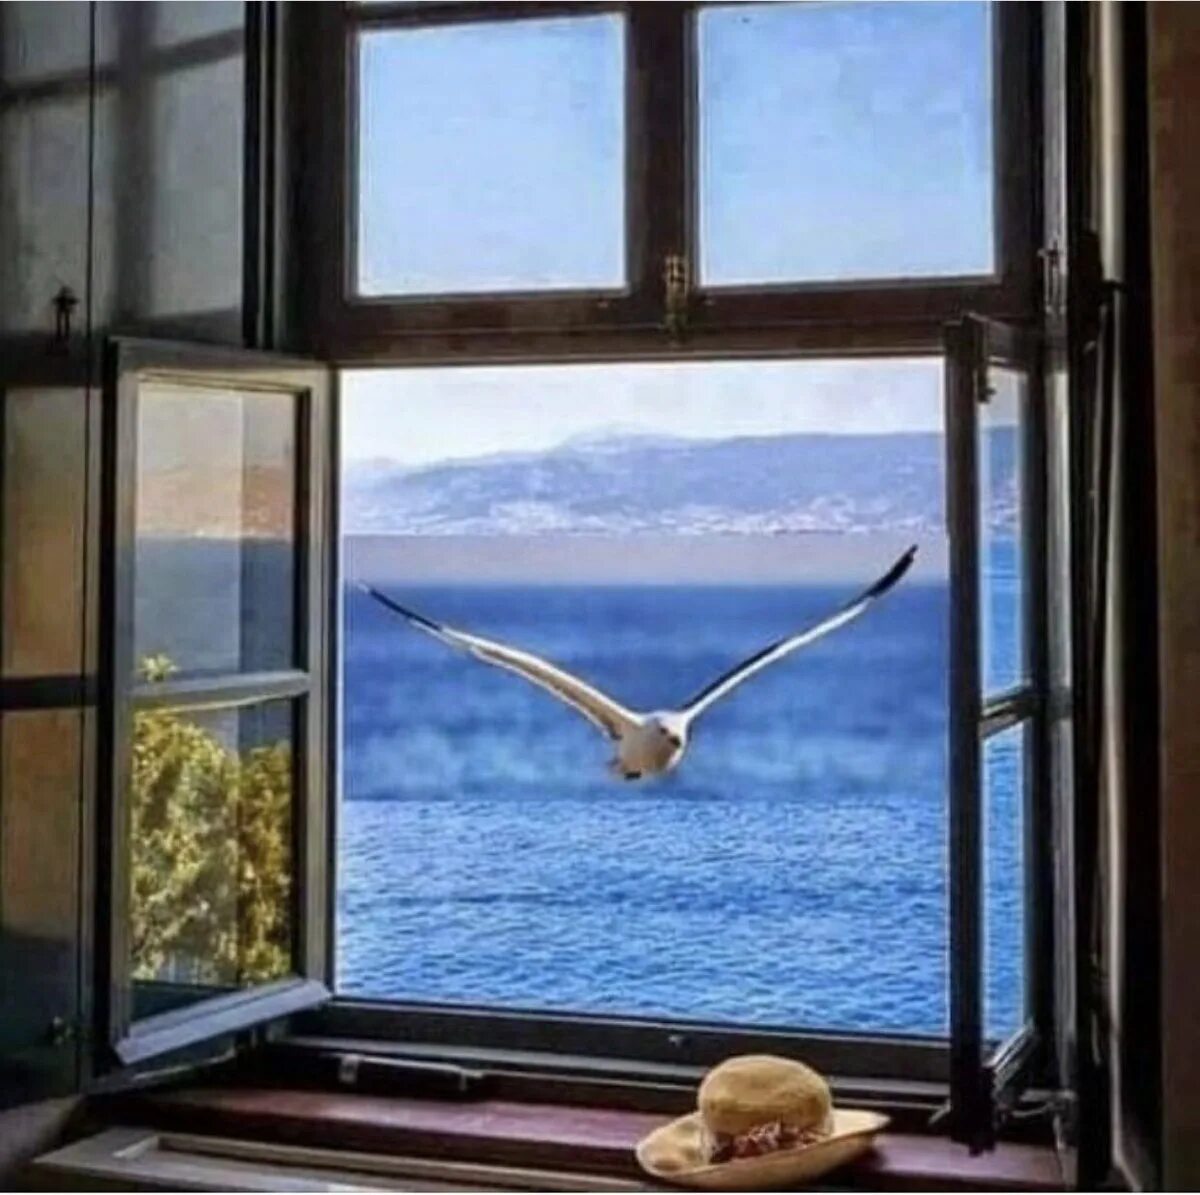 У окна. Окно с красивым видом. Вид из окна на море. Окно с видом на море.